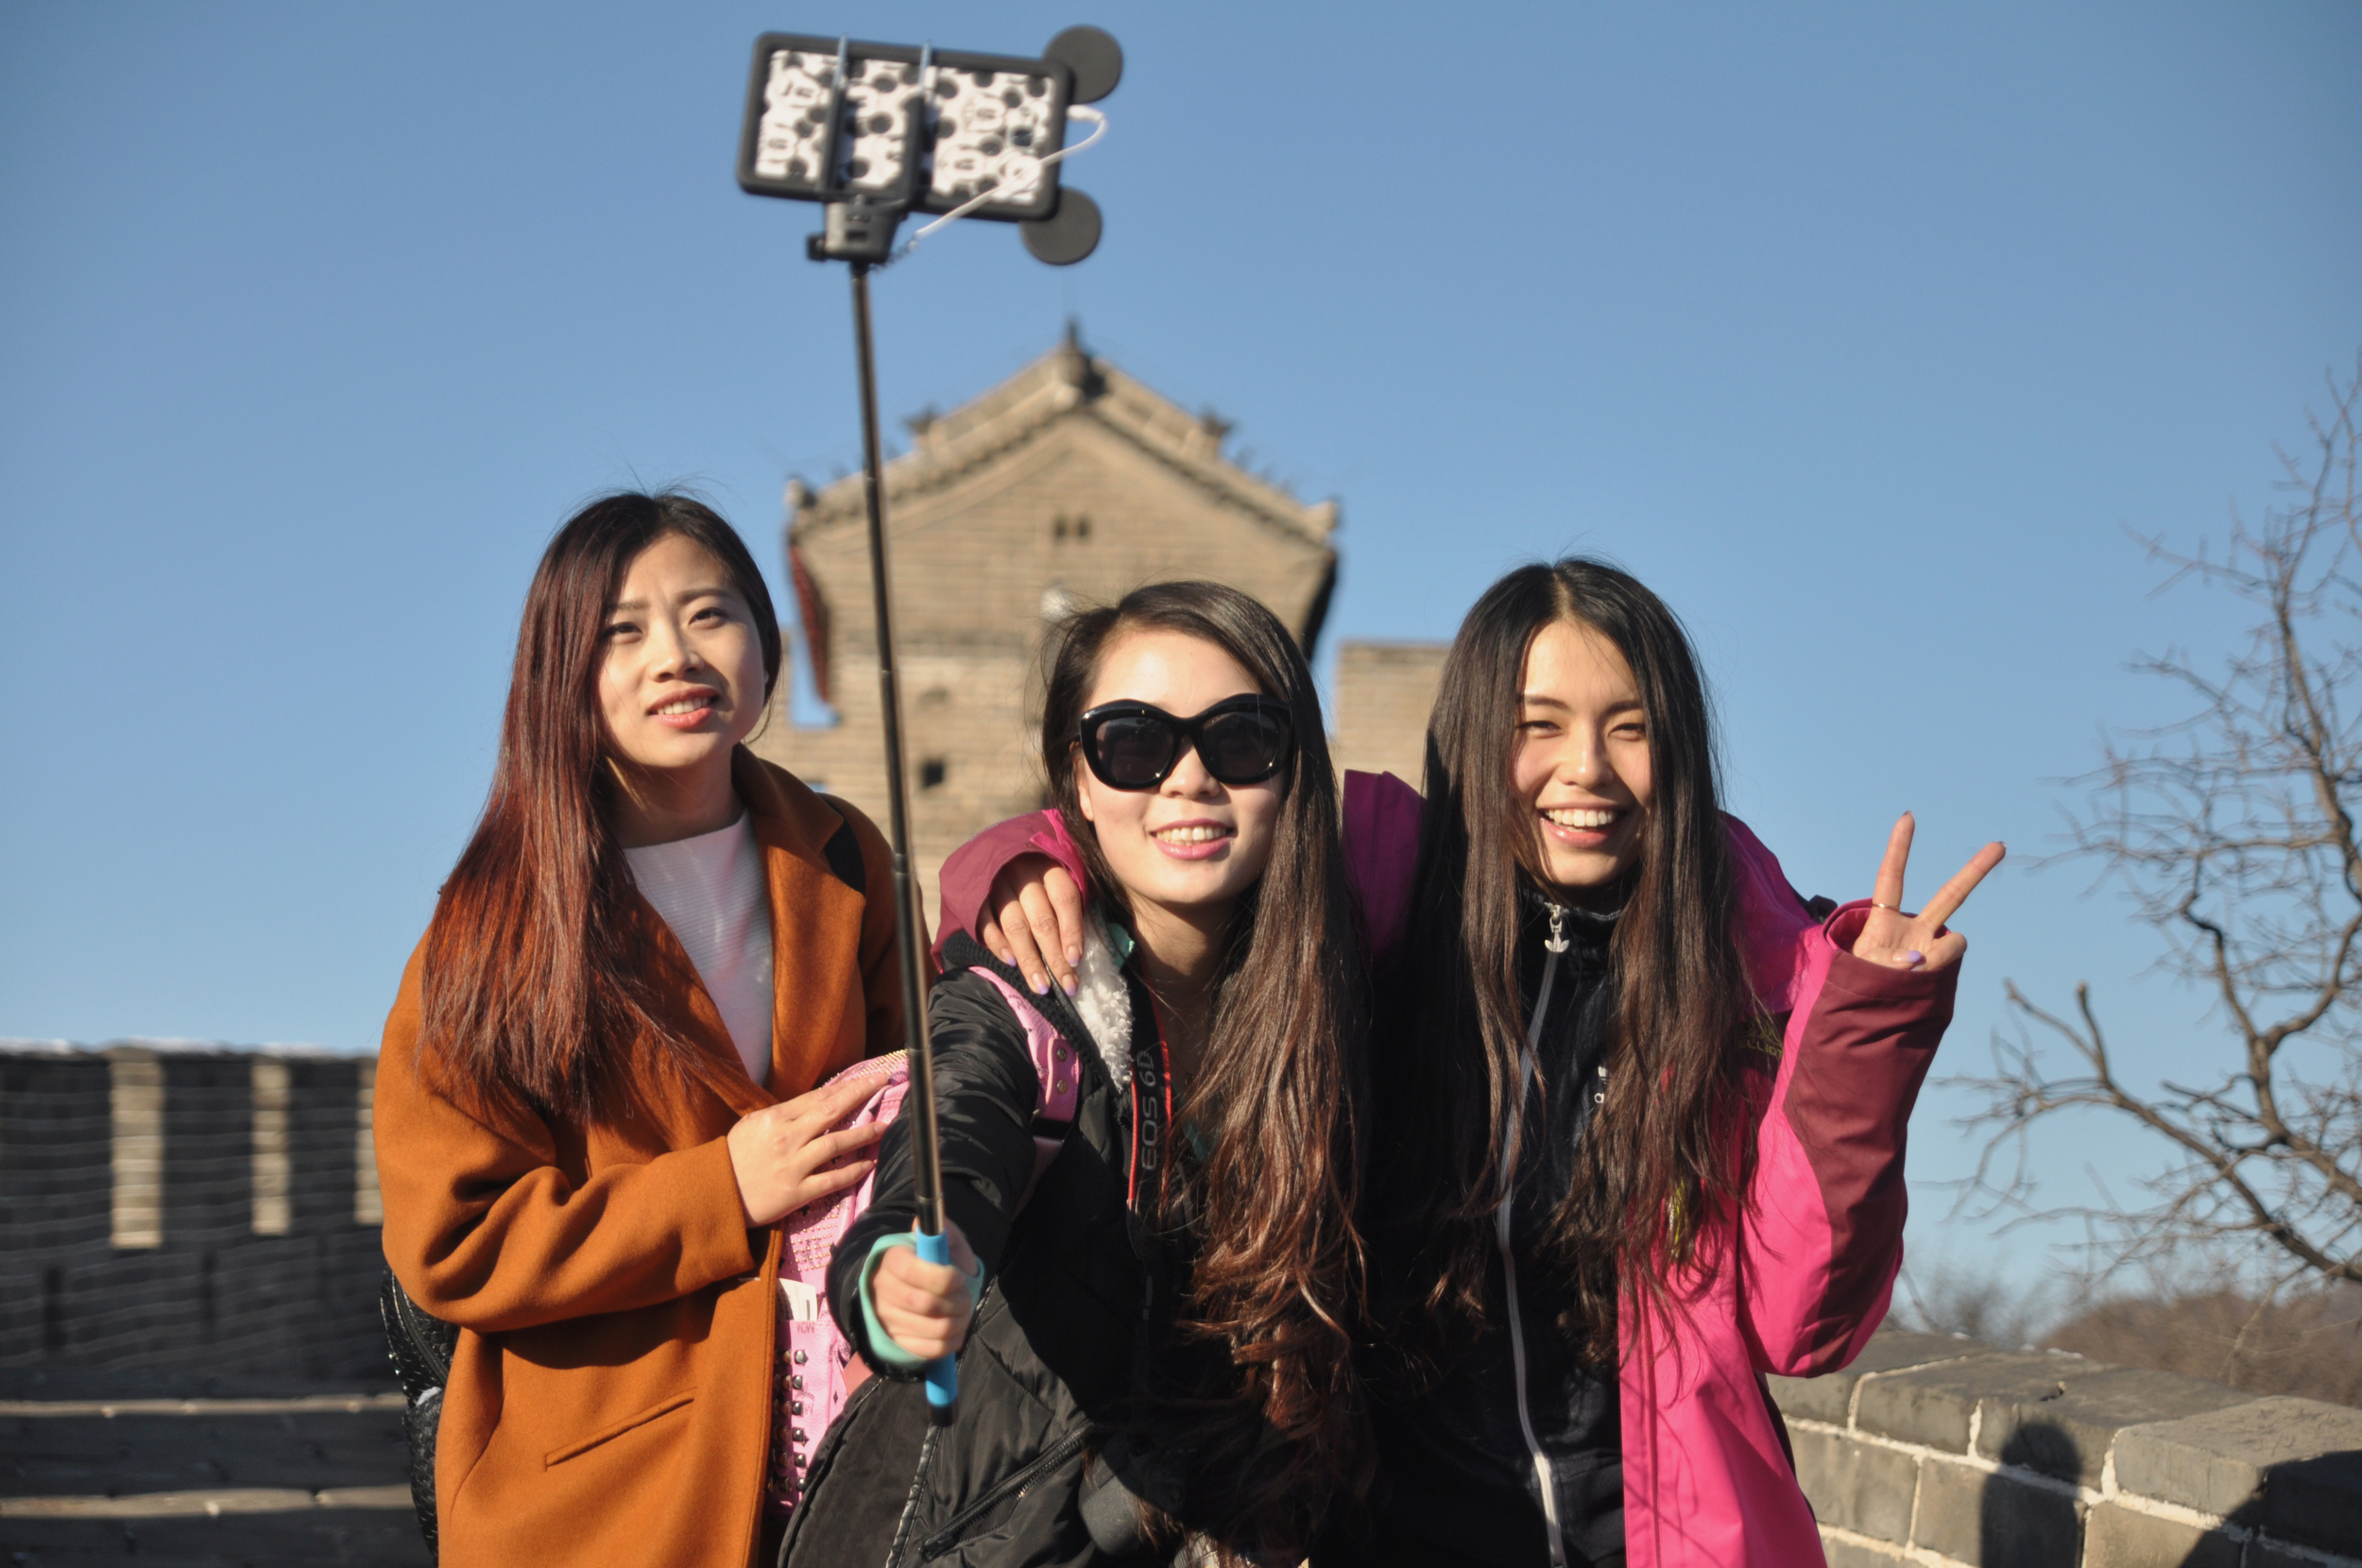  Great Wall of China, 2015. 